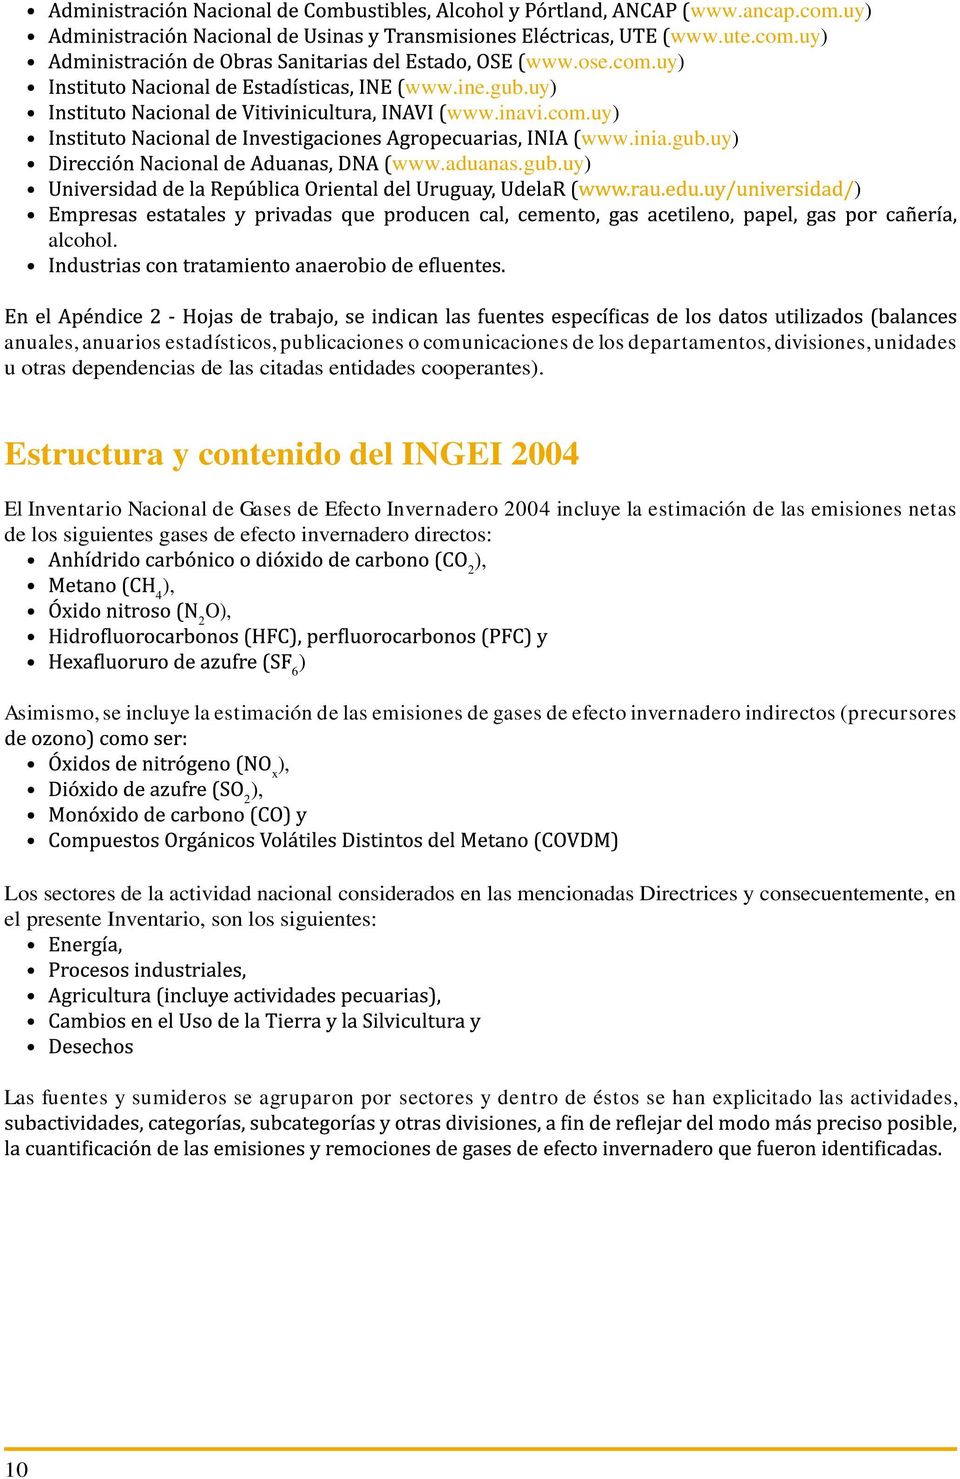 Estructura y contenido del INGEI 2004 El Inventario Nacional de Gases de Efecto Invernadero 2004 incluye la estimación de las emisiones netas de los siguientes gases de efecto invernadero directos: 2